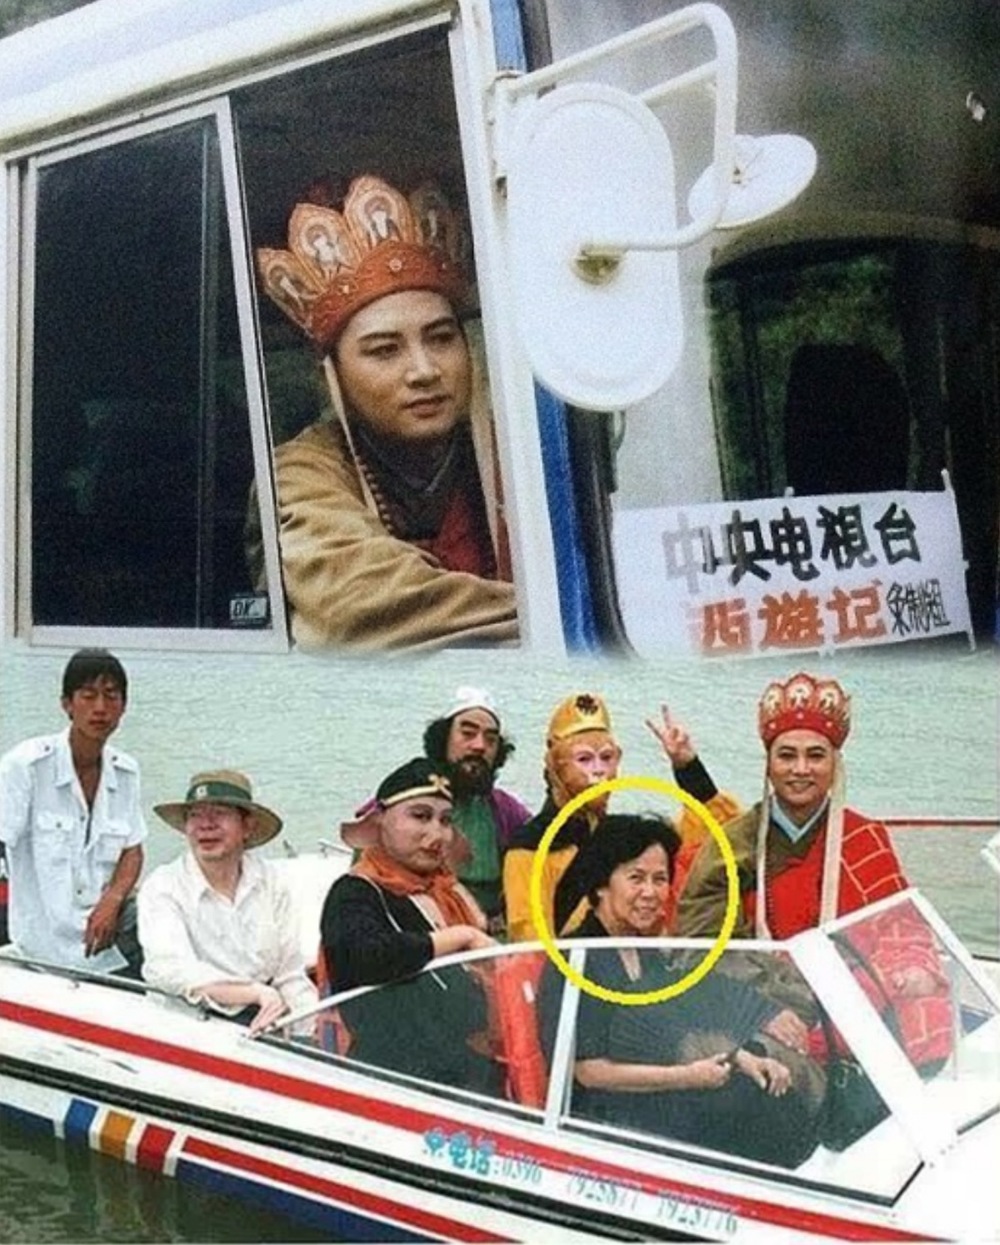  
Hình ảnh thầy trò Đường Tăng sử dụng phương tiện đi lại hiện đại. (Ảnh: Weibo)